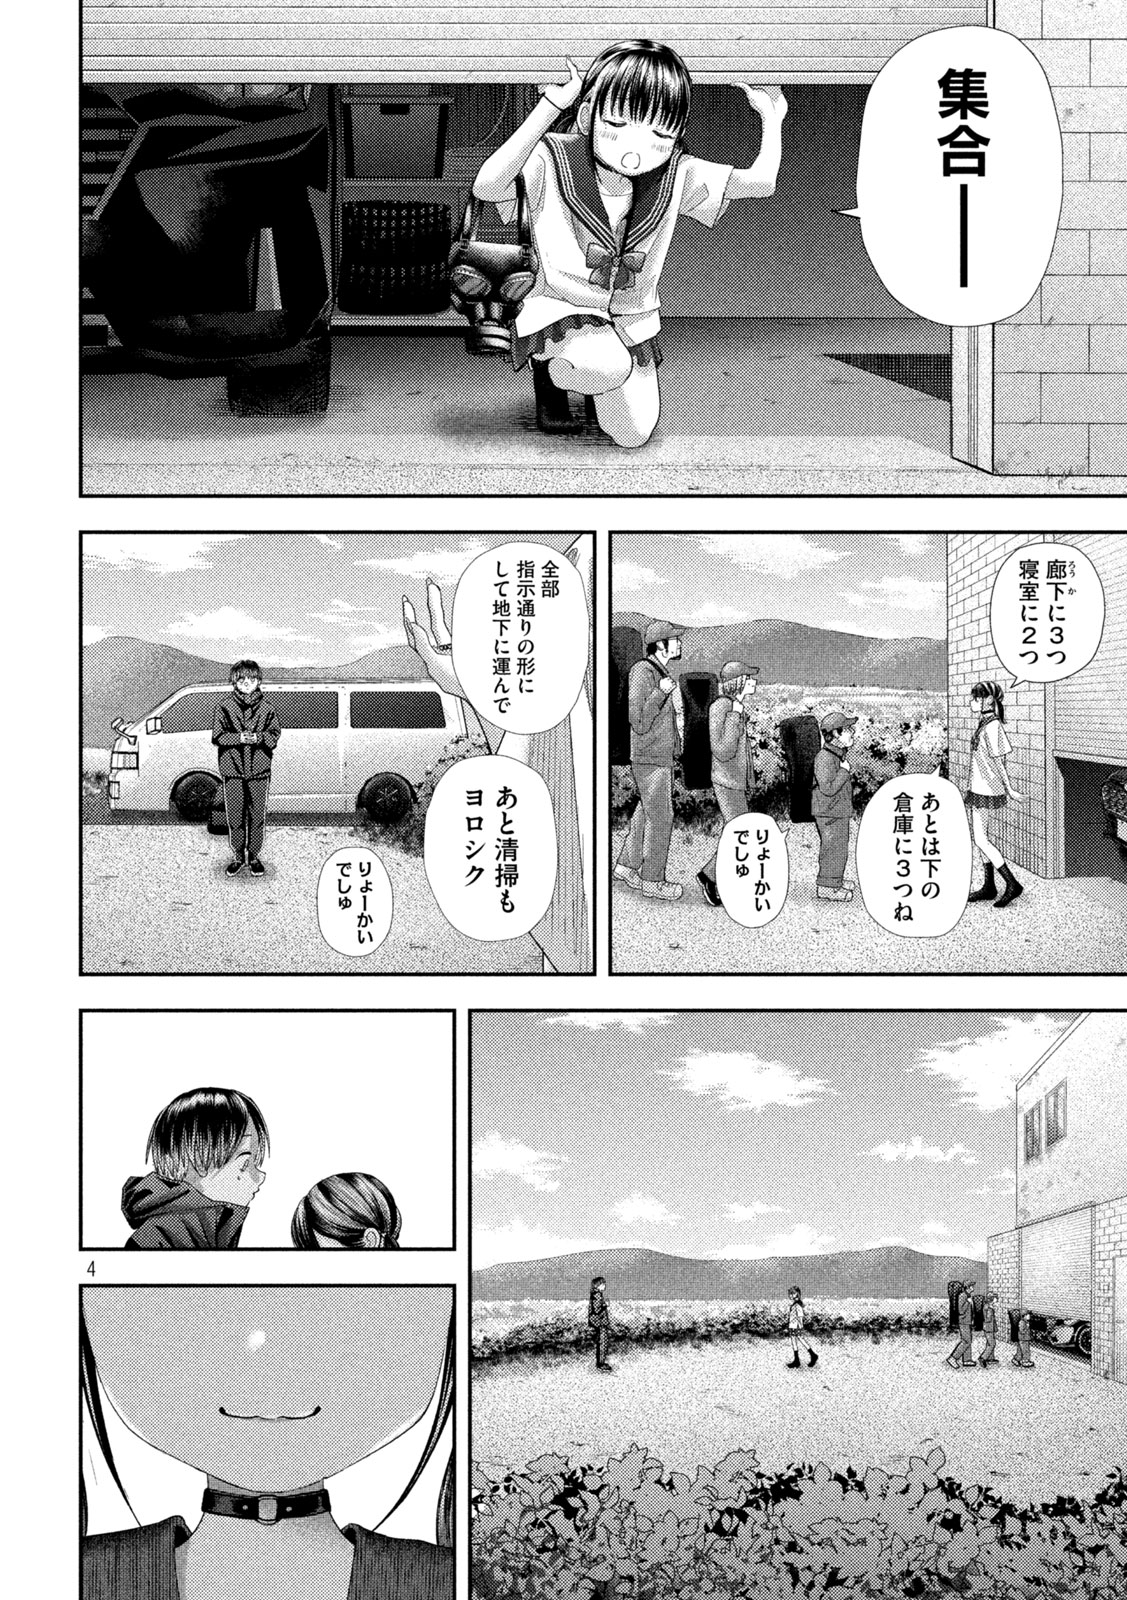 Nezumi no Koi - Chapter 32 - Page 4